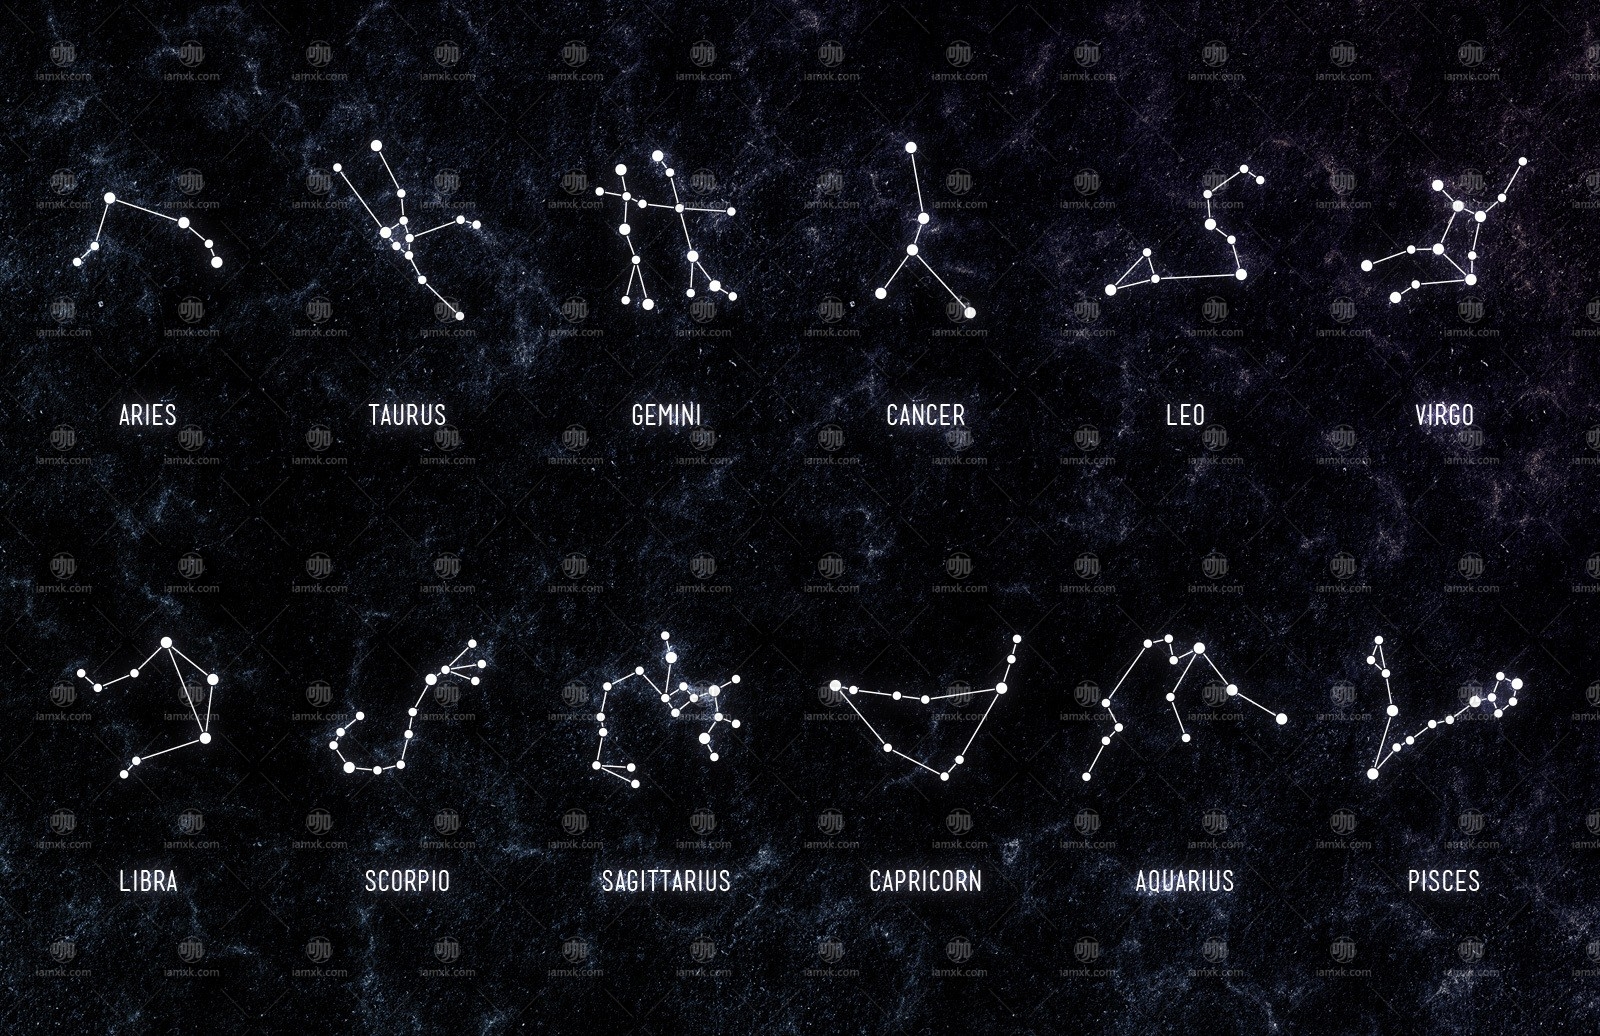 十二星座矢量素材 free zodiac constellation vectors